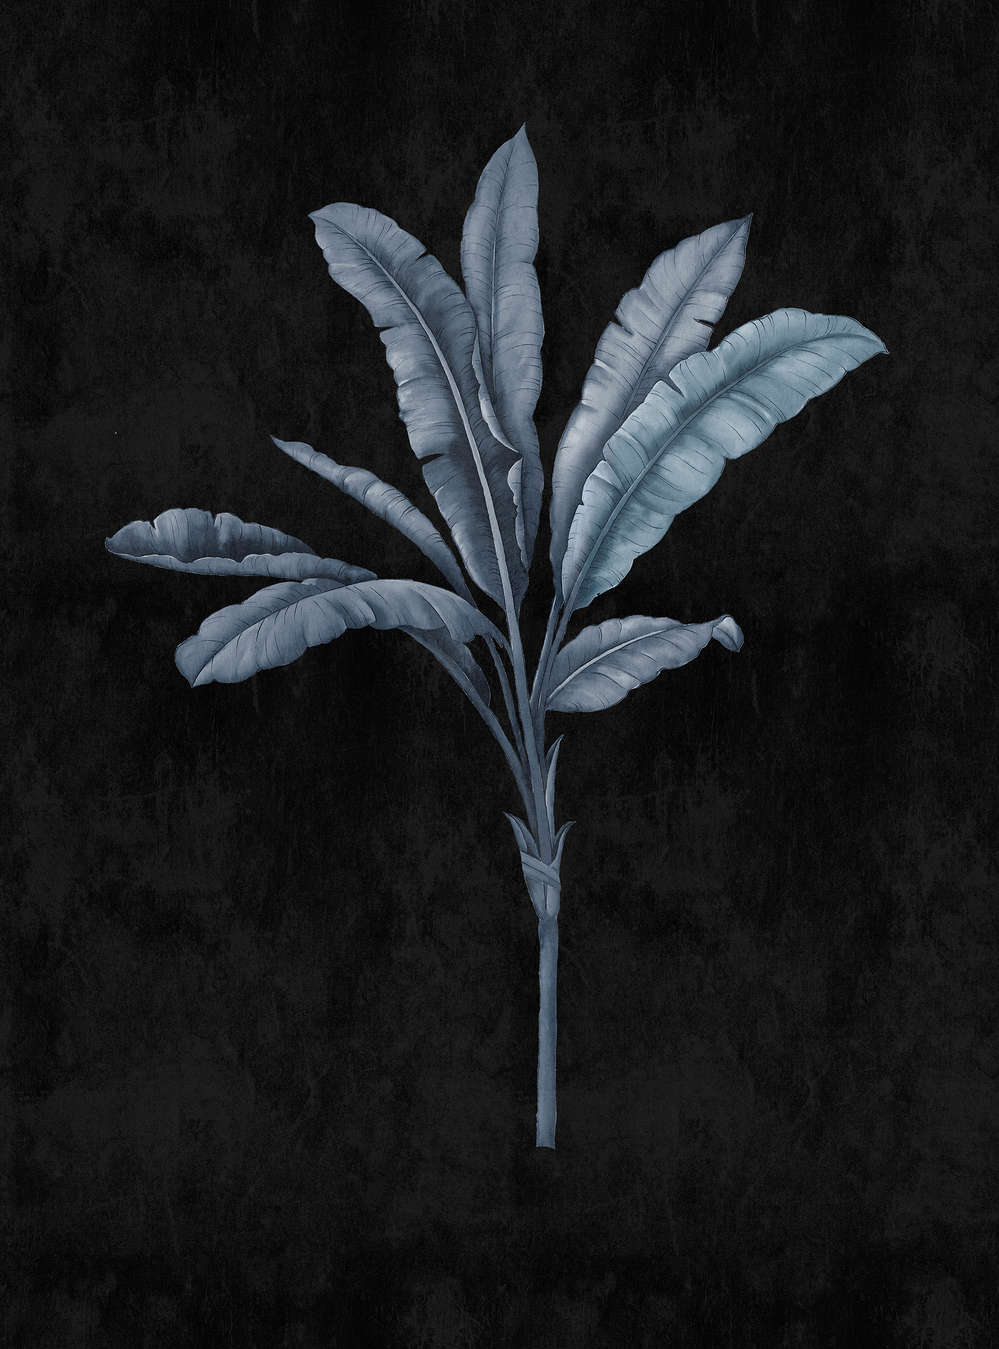             Fidji 2 - papier peint noir avec motif de palmiers bleu-gris
        